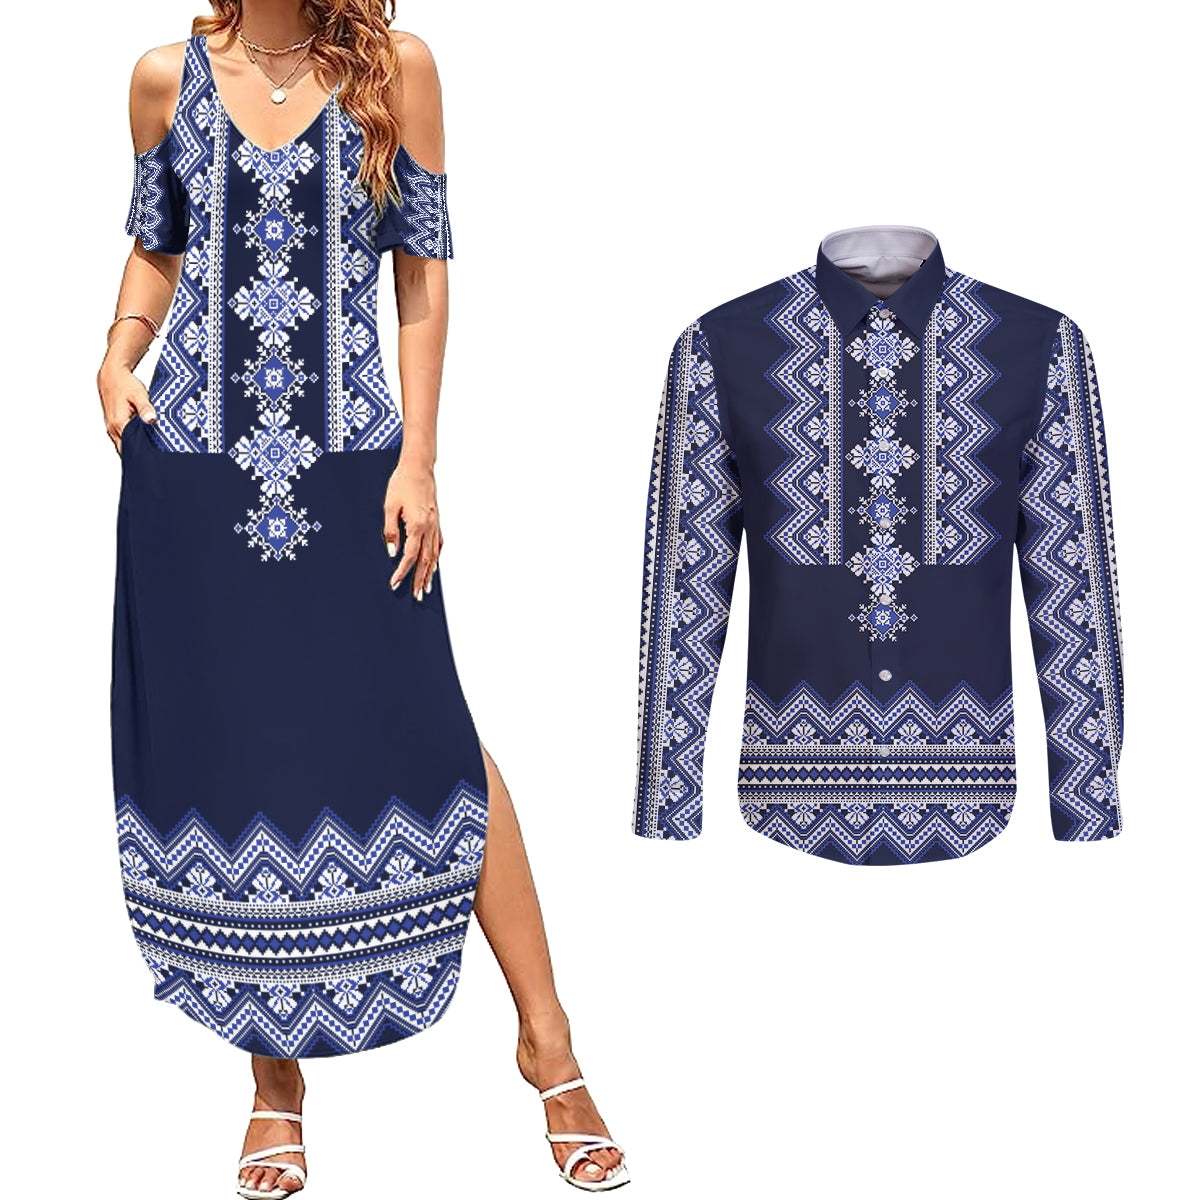 ukraine-folk-pattern-couples-matching-summer-maxi-dress-and-long-sleeve-button-shirt-ukrainian-navy-blue-version